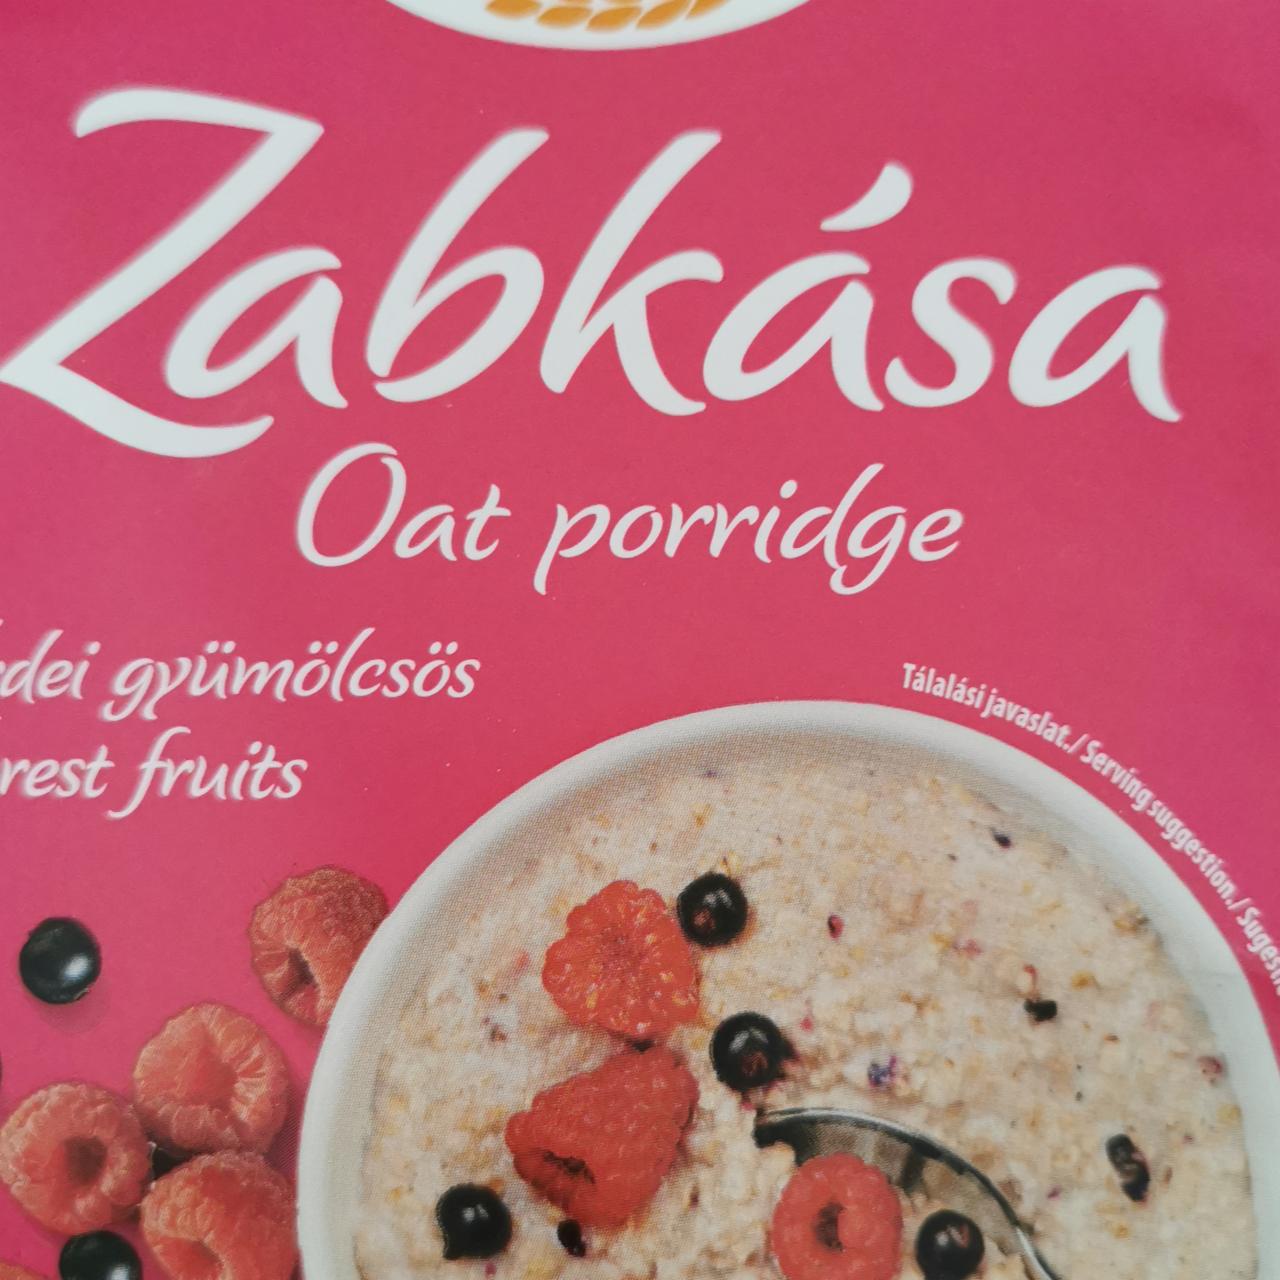 Fotografie - Zabkása Oat porridge Forest fruits Cerbona